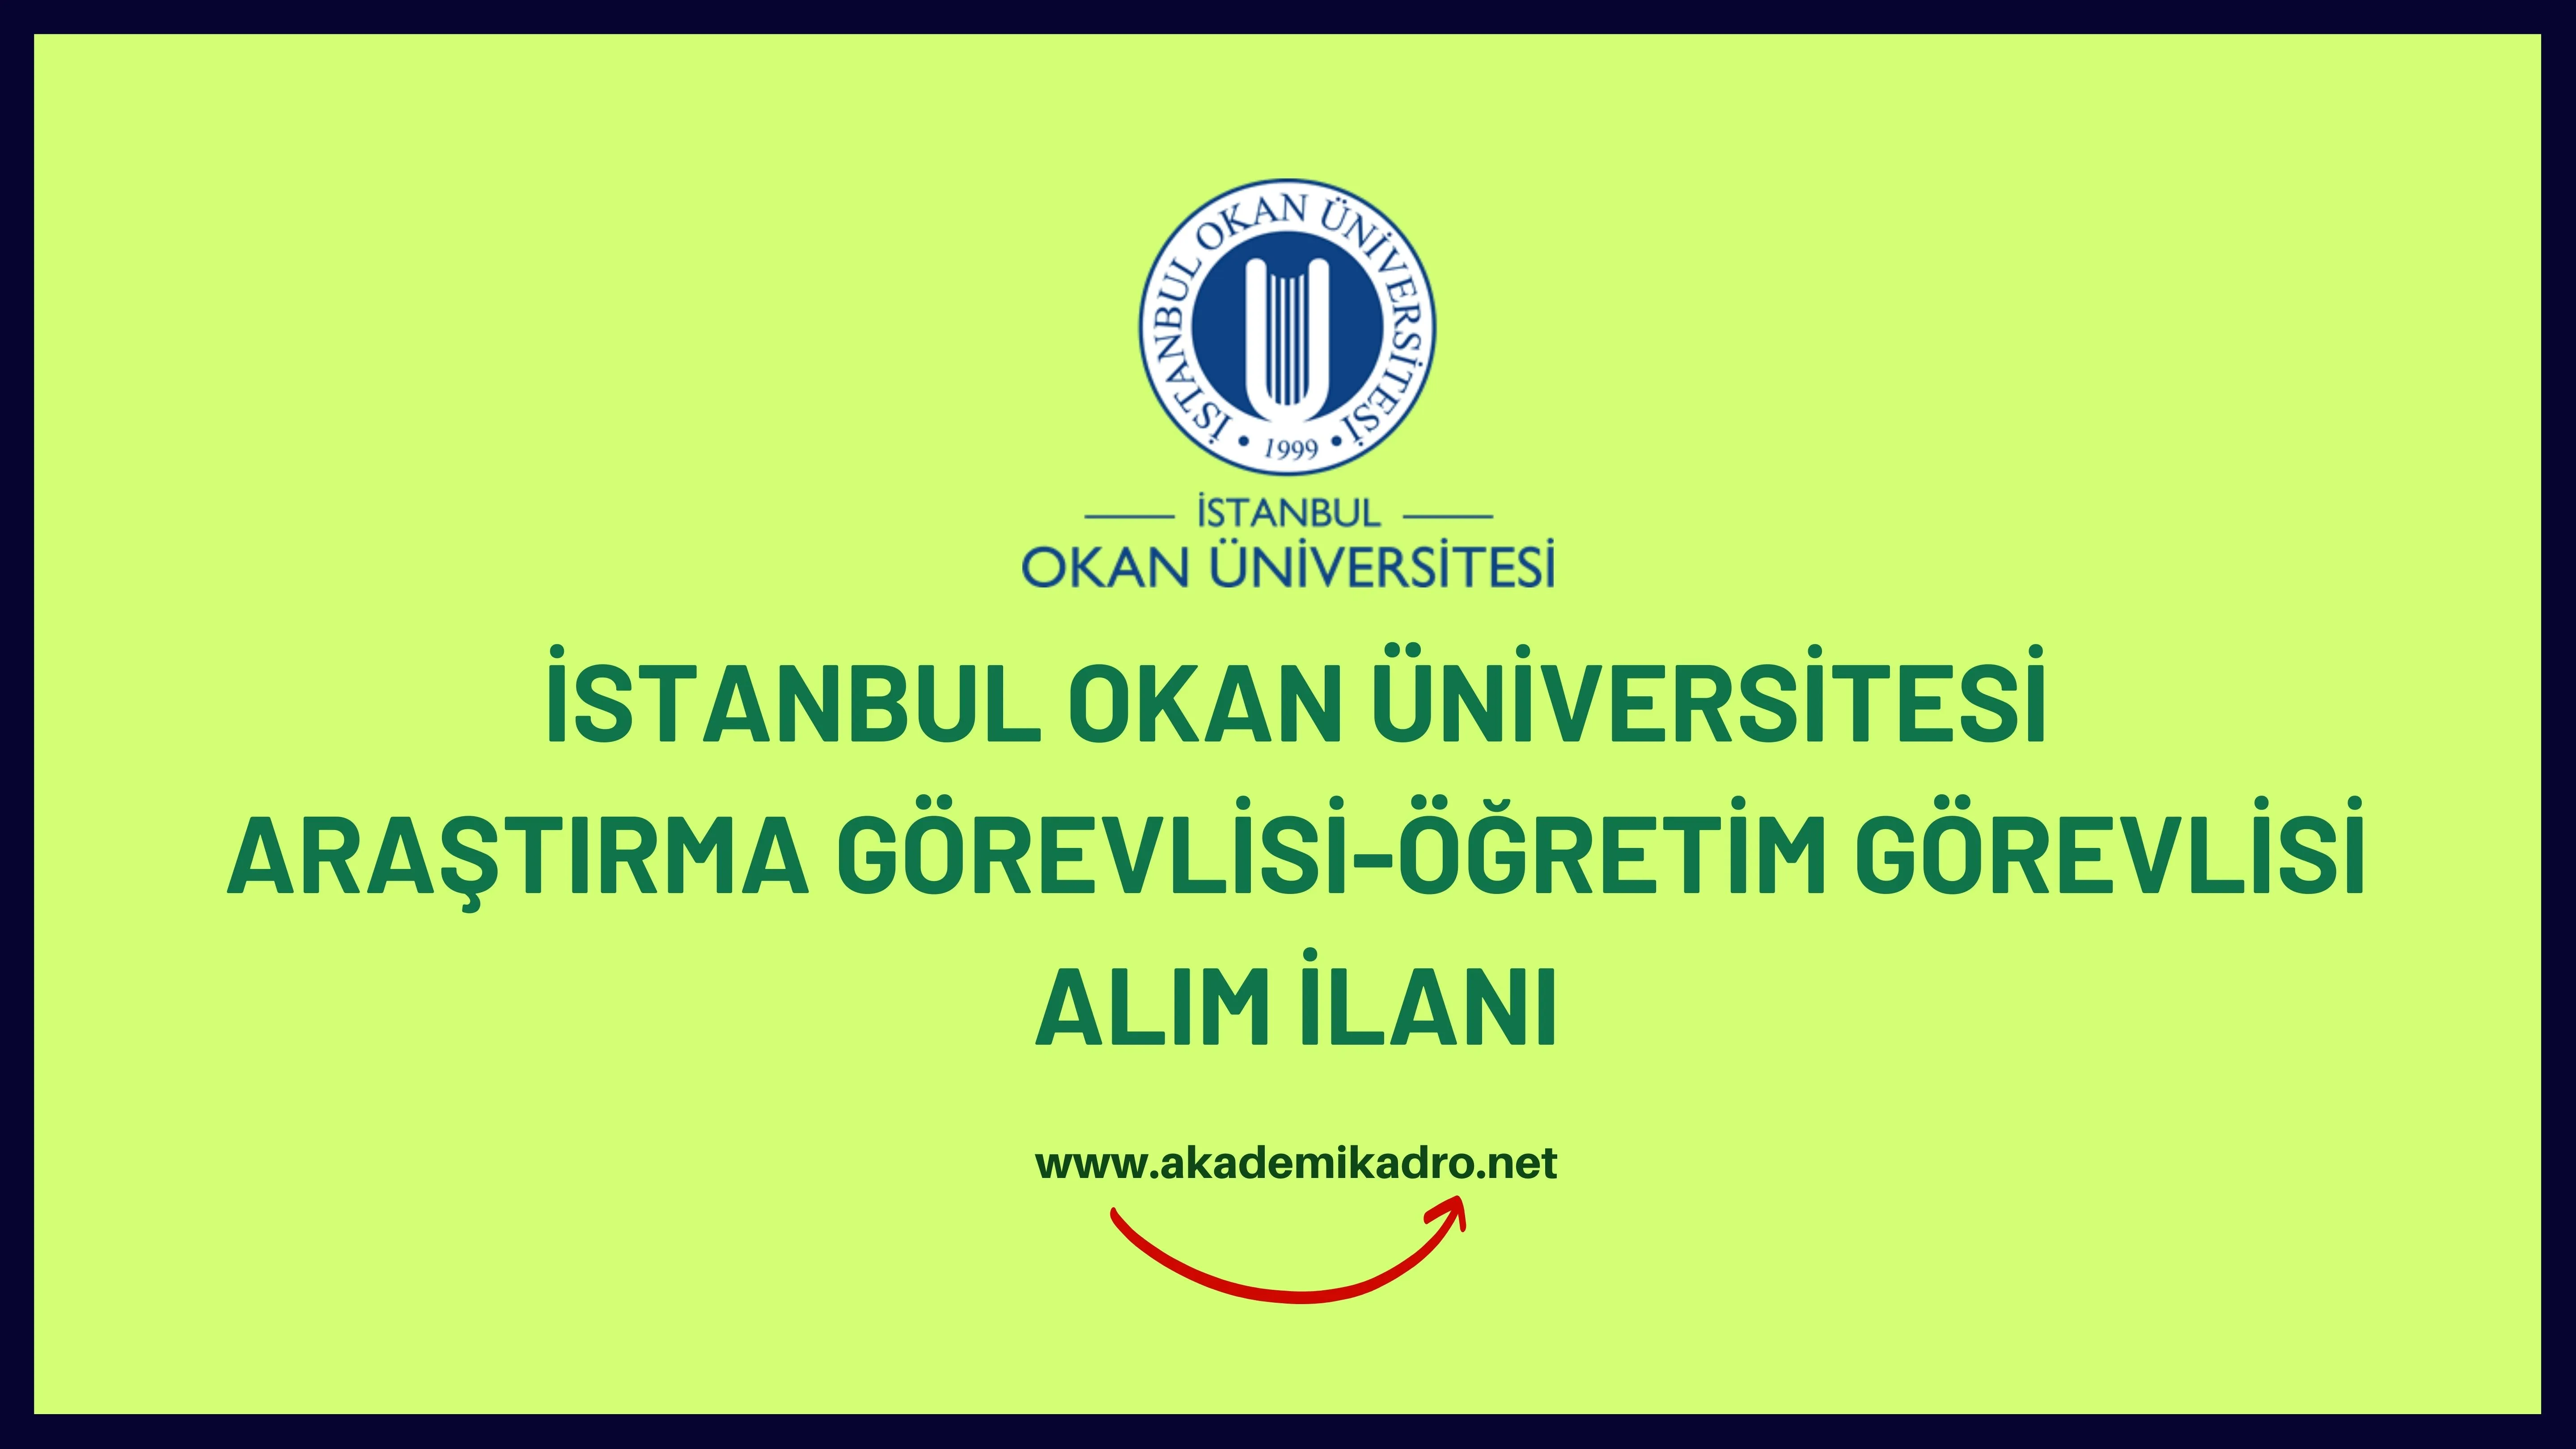 İstanbul Okan Üniversitesi Araştırma görevlisi, öğretim görevlisi ve çok sayıda öğretim üyesi alacaktır. Son başvuru tarihi 20 Kasım 2023